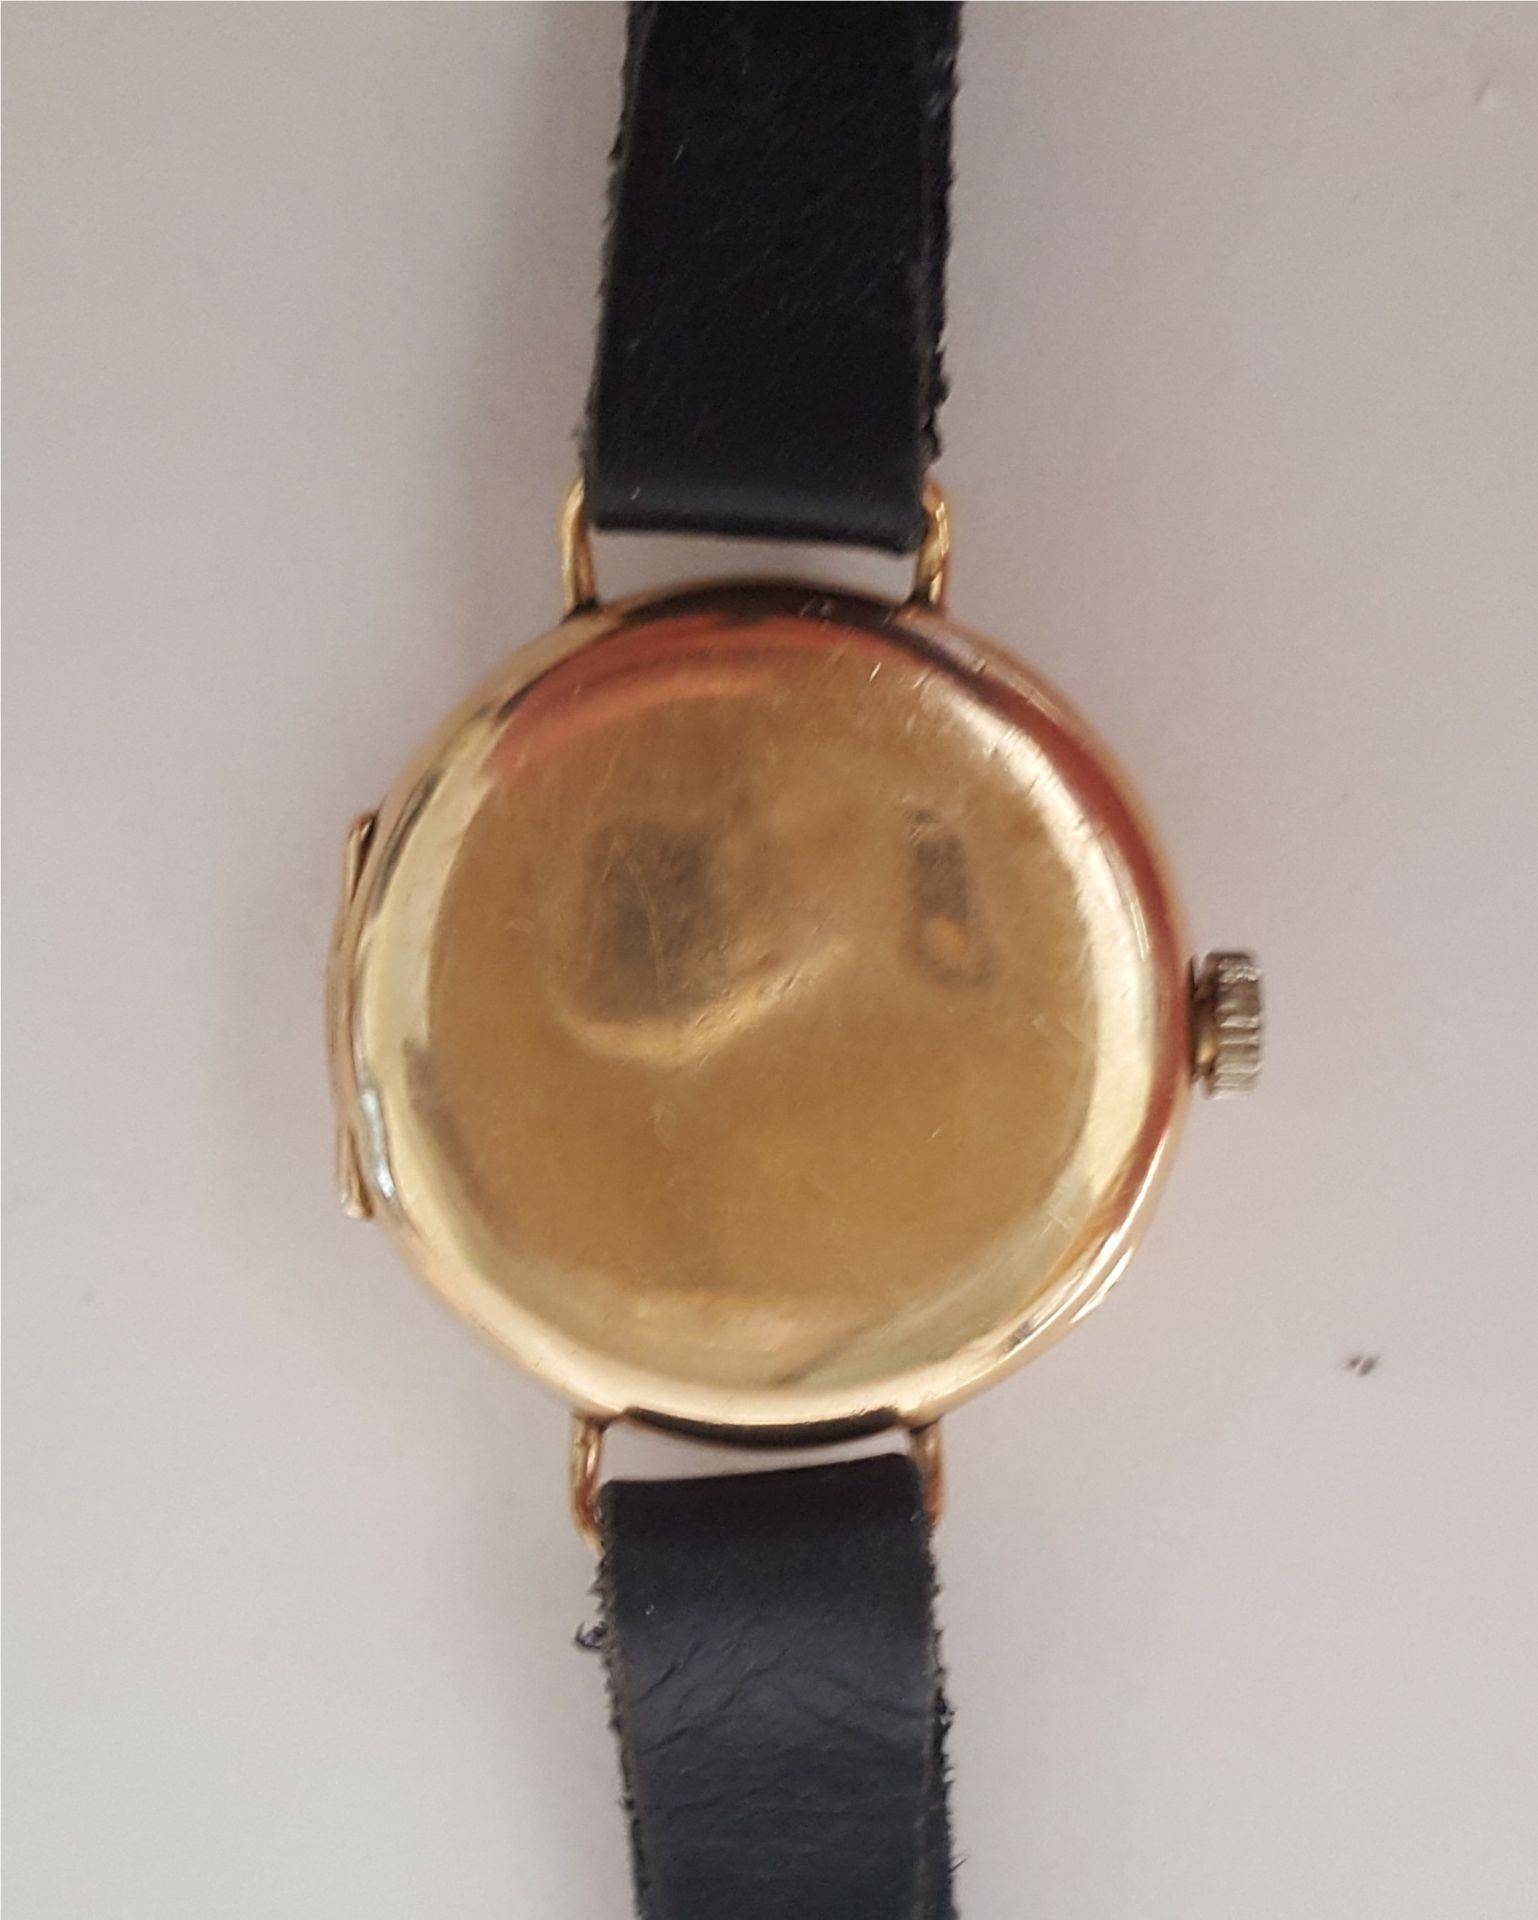 Antique 9ct Gold Ladies wrist Watch Hallmarked 1918 Denison Case - Image 3 of 3